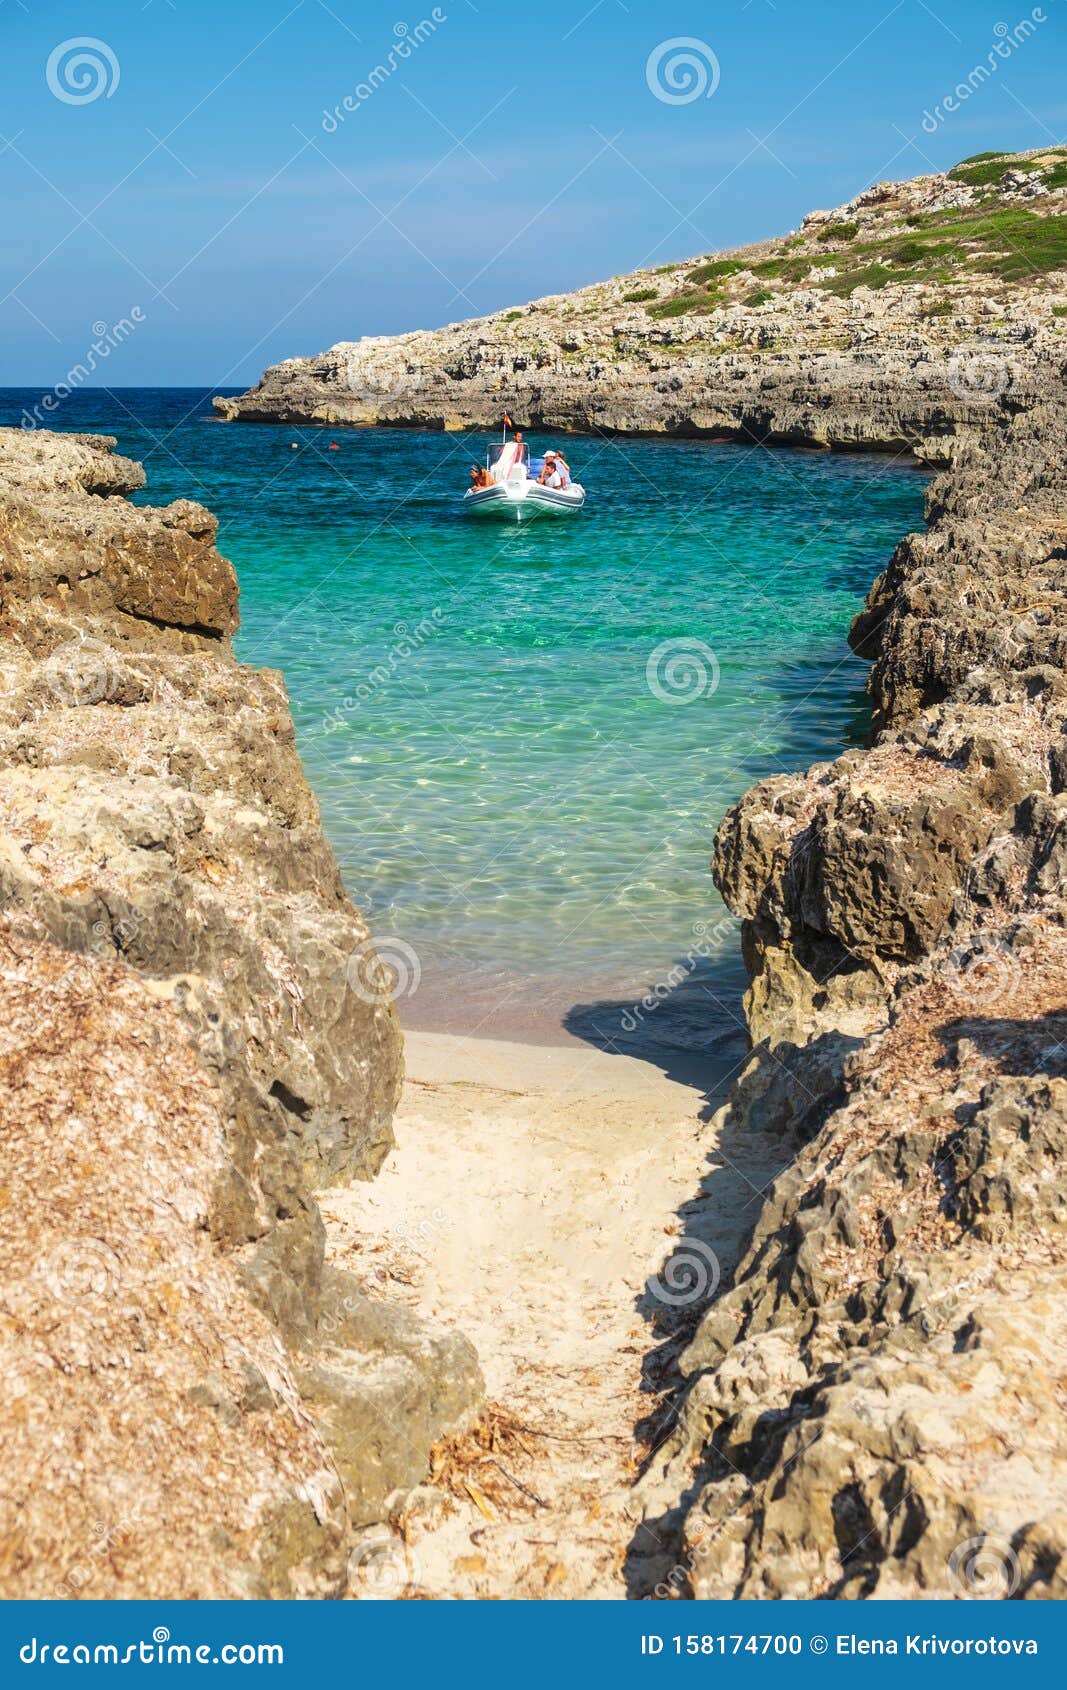 view on the beach calo roig on menorca, balearic islands